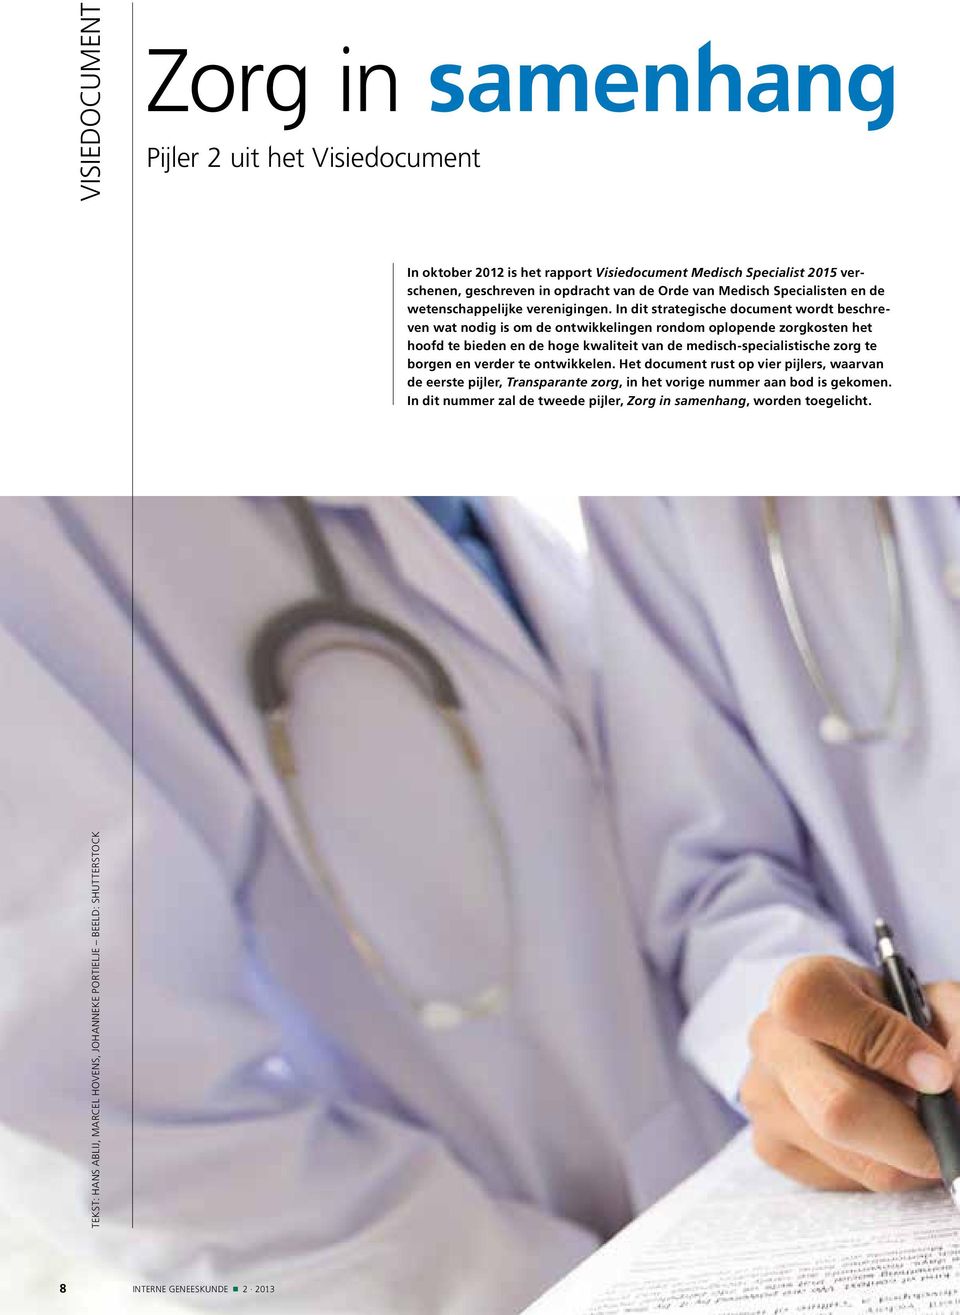 In dit strategische document wordt beschreven wat nodig is om de ontwikkelingen rondom oplopende zorgkosten het hoofd te bieden en de hoge kwaliteit van de medisch-specialistische